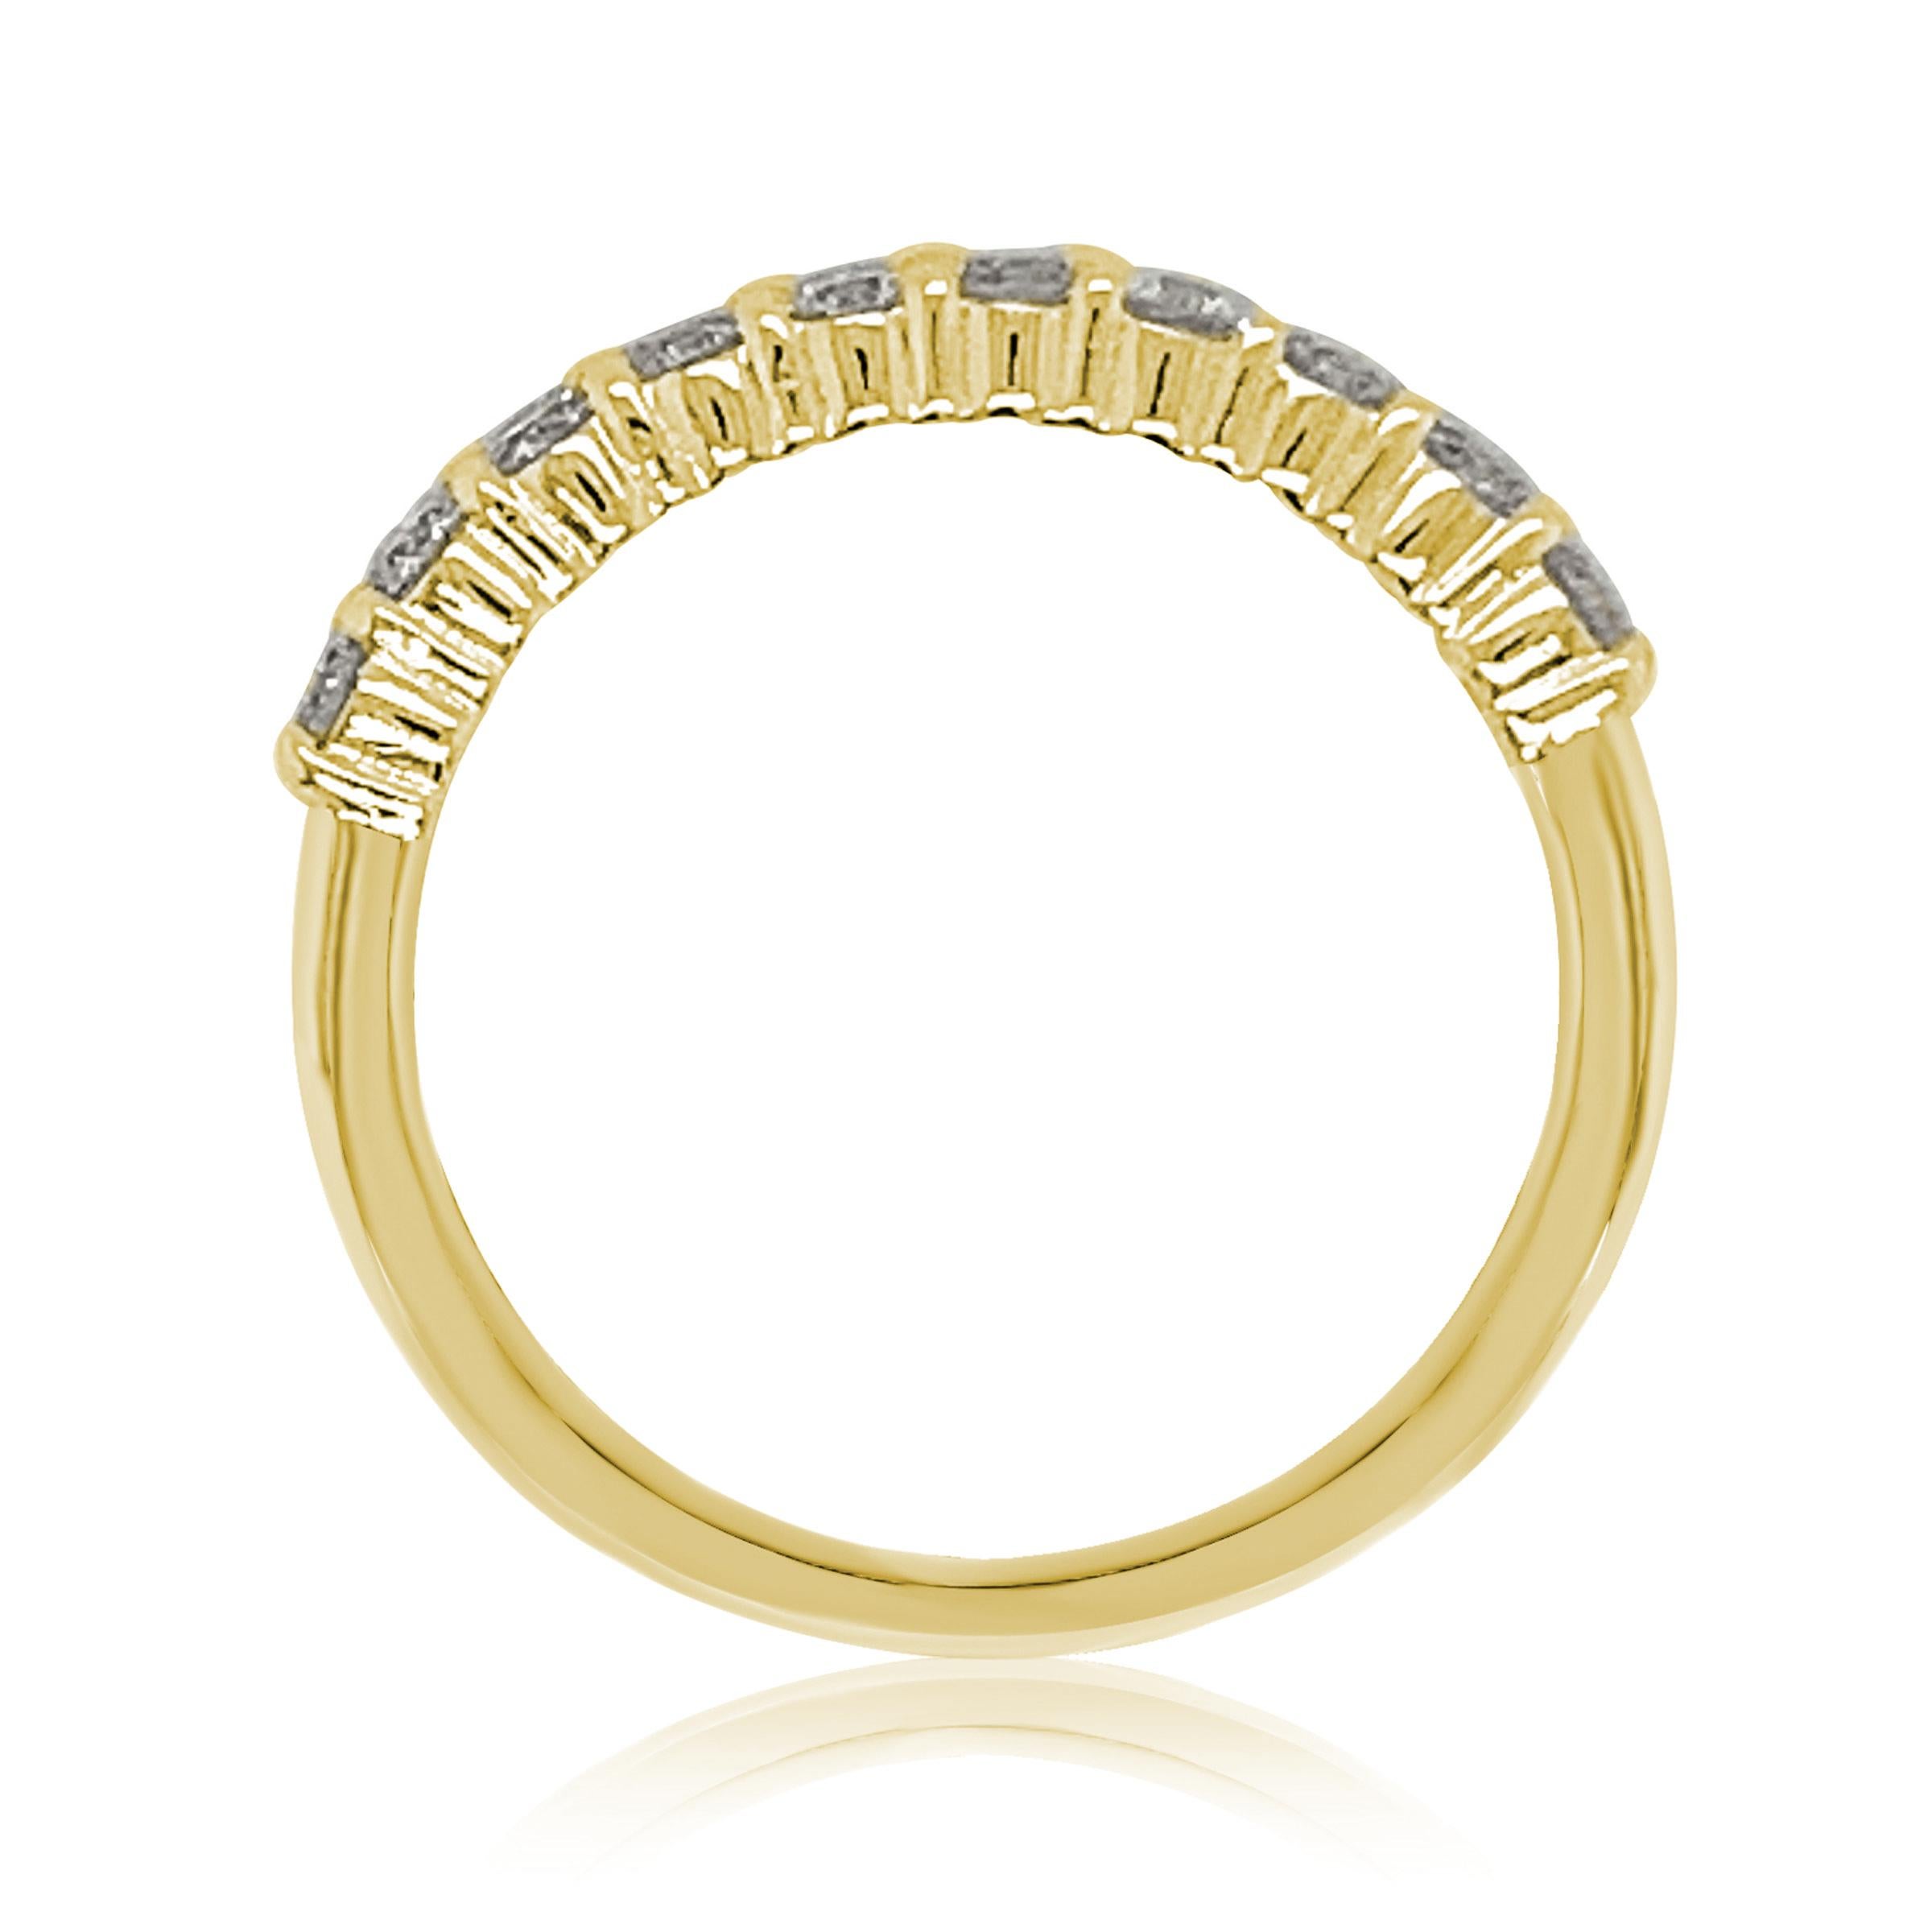 Cet élégant bracelet demi-éternité en diamants de Suzy Levian comporte un total de dix diamants ronds taillés (G-H, S1-S2). Les diamants scintillent sur la moitié de l'anneau d'éternité, pour un éclat que vous ne pouvez pas manquer avec une coupe